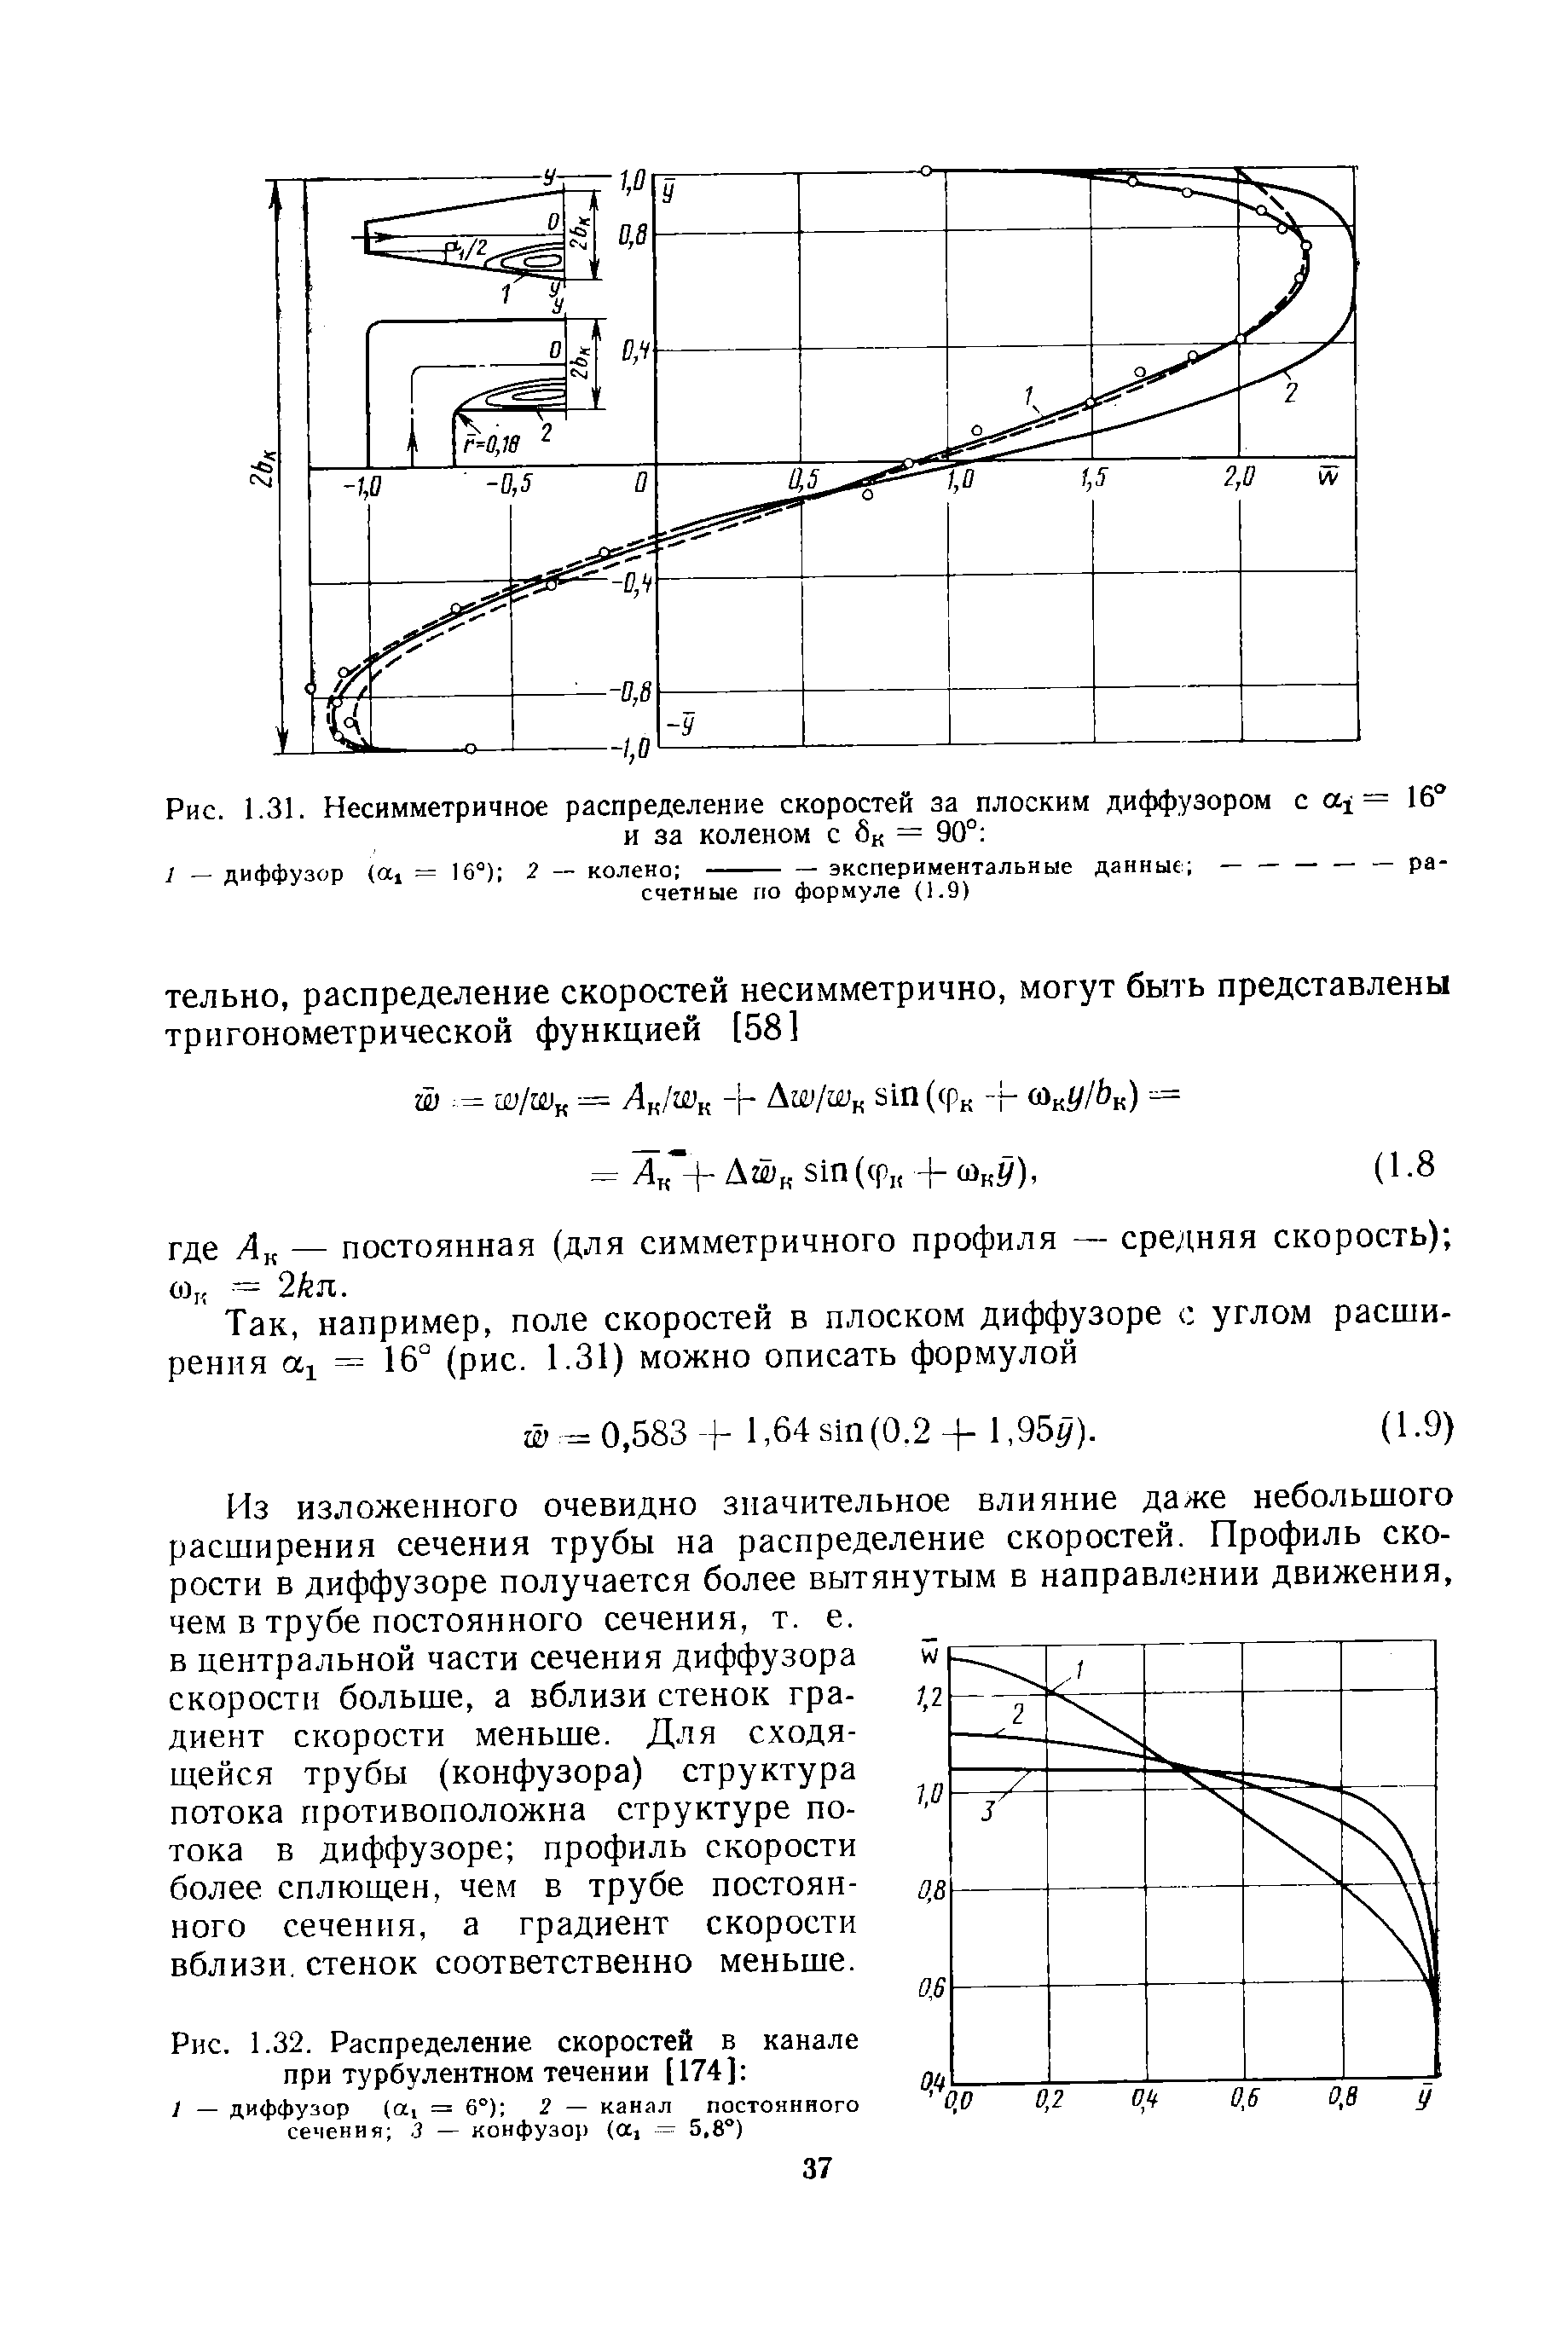 Рис. 1.32. <a href="/info/20718">Распределение скоростей</a> в канале при турбулентном течении [174] 
